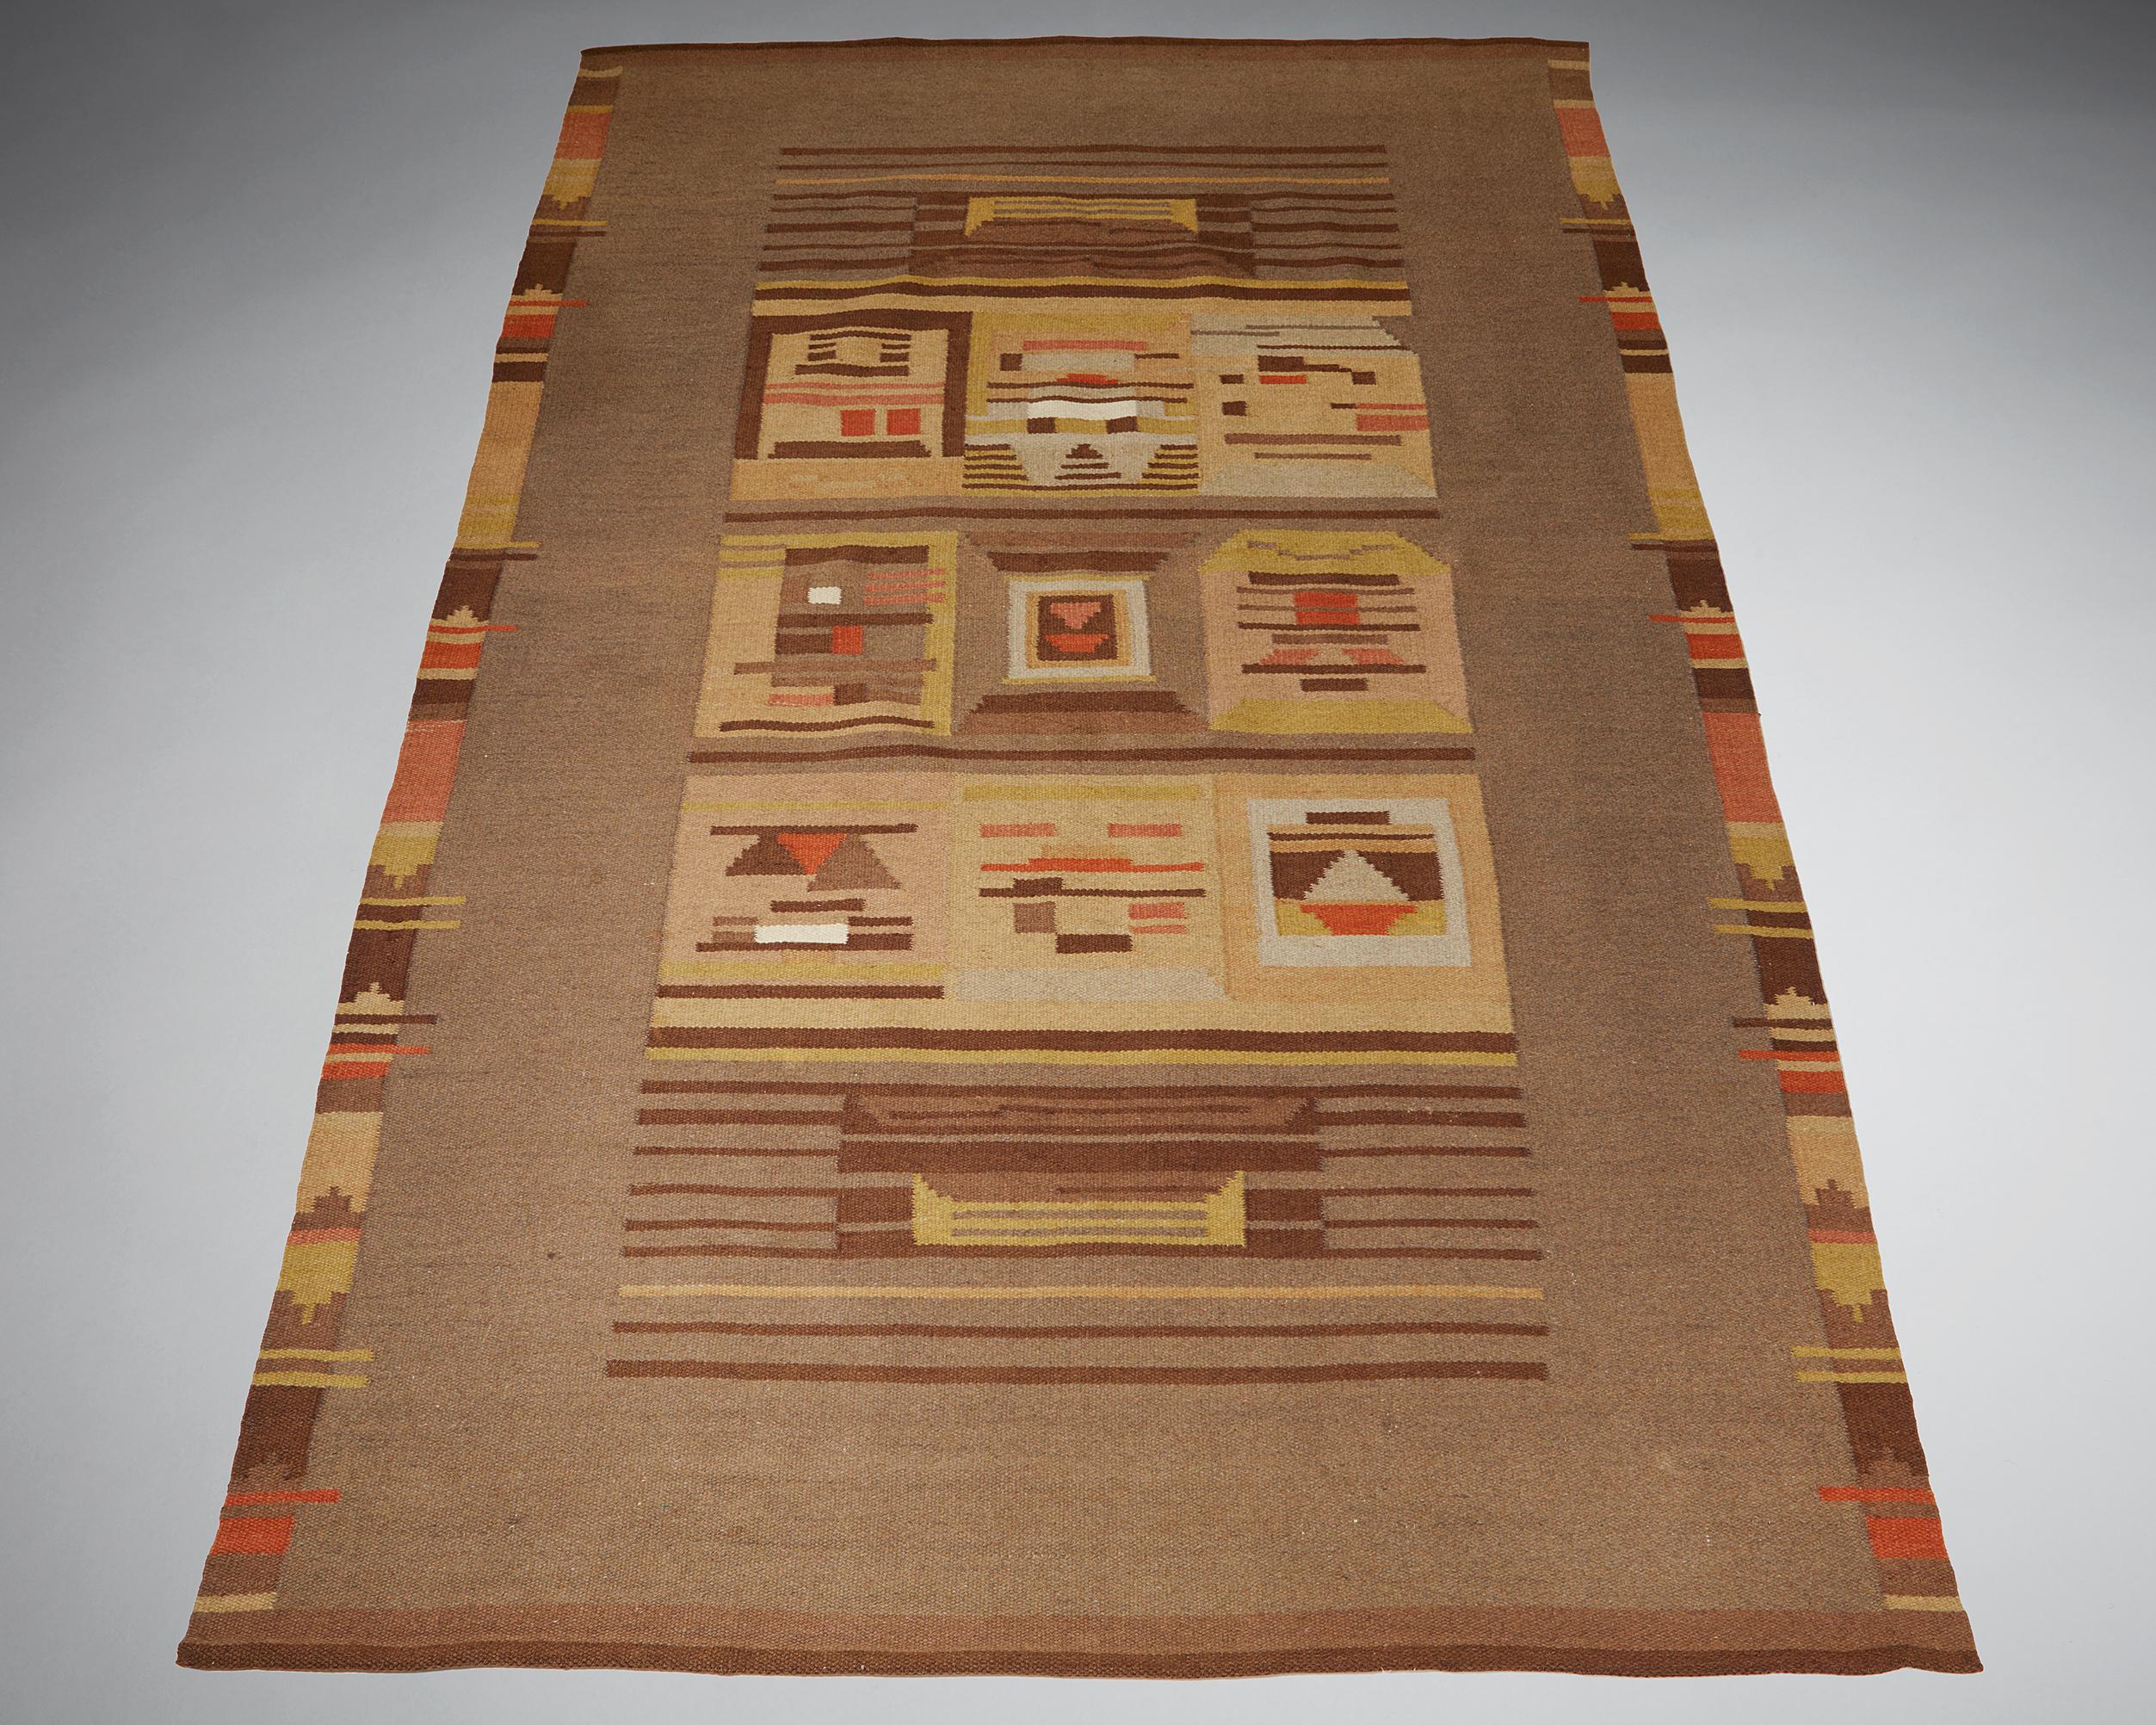 Rug, designed by Impi Sotavalta,
Finland, 1930s. 

Flat weave rug.

Dimensions:
L: 299 cm / 9’ 9 1/4’’
W: 190 cm / 6’ 2 3/4’’